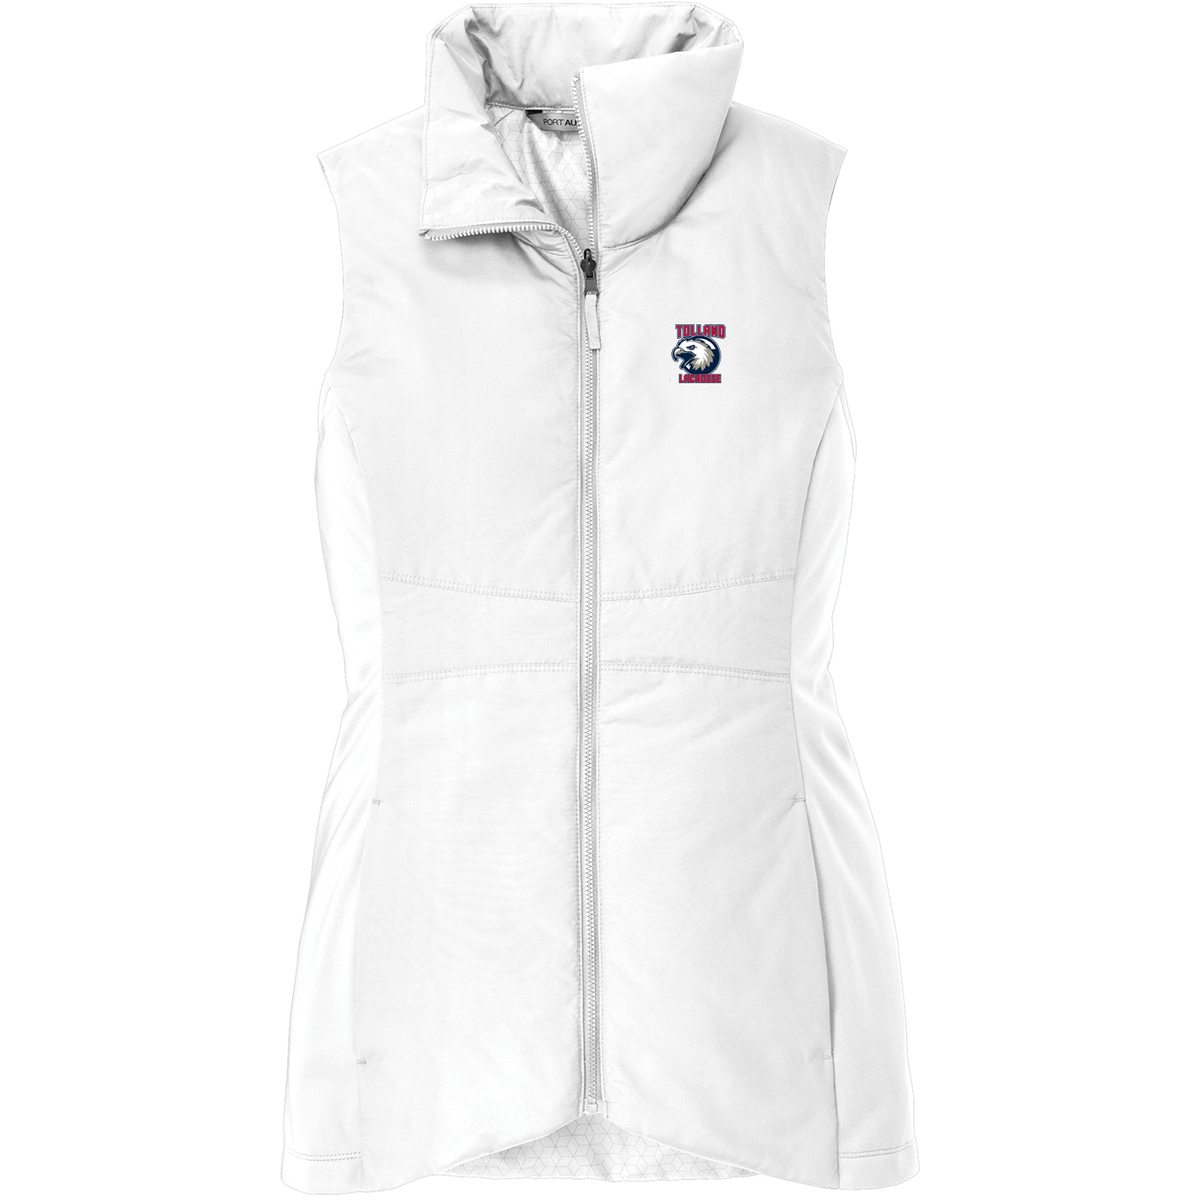 Tolland Lacrosse Club Women's Vest